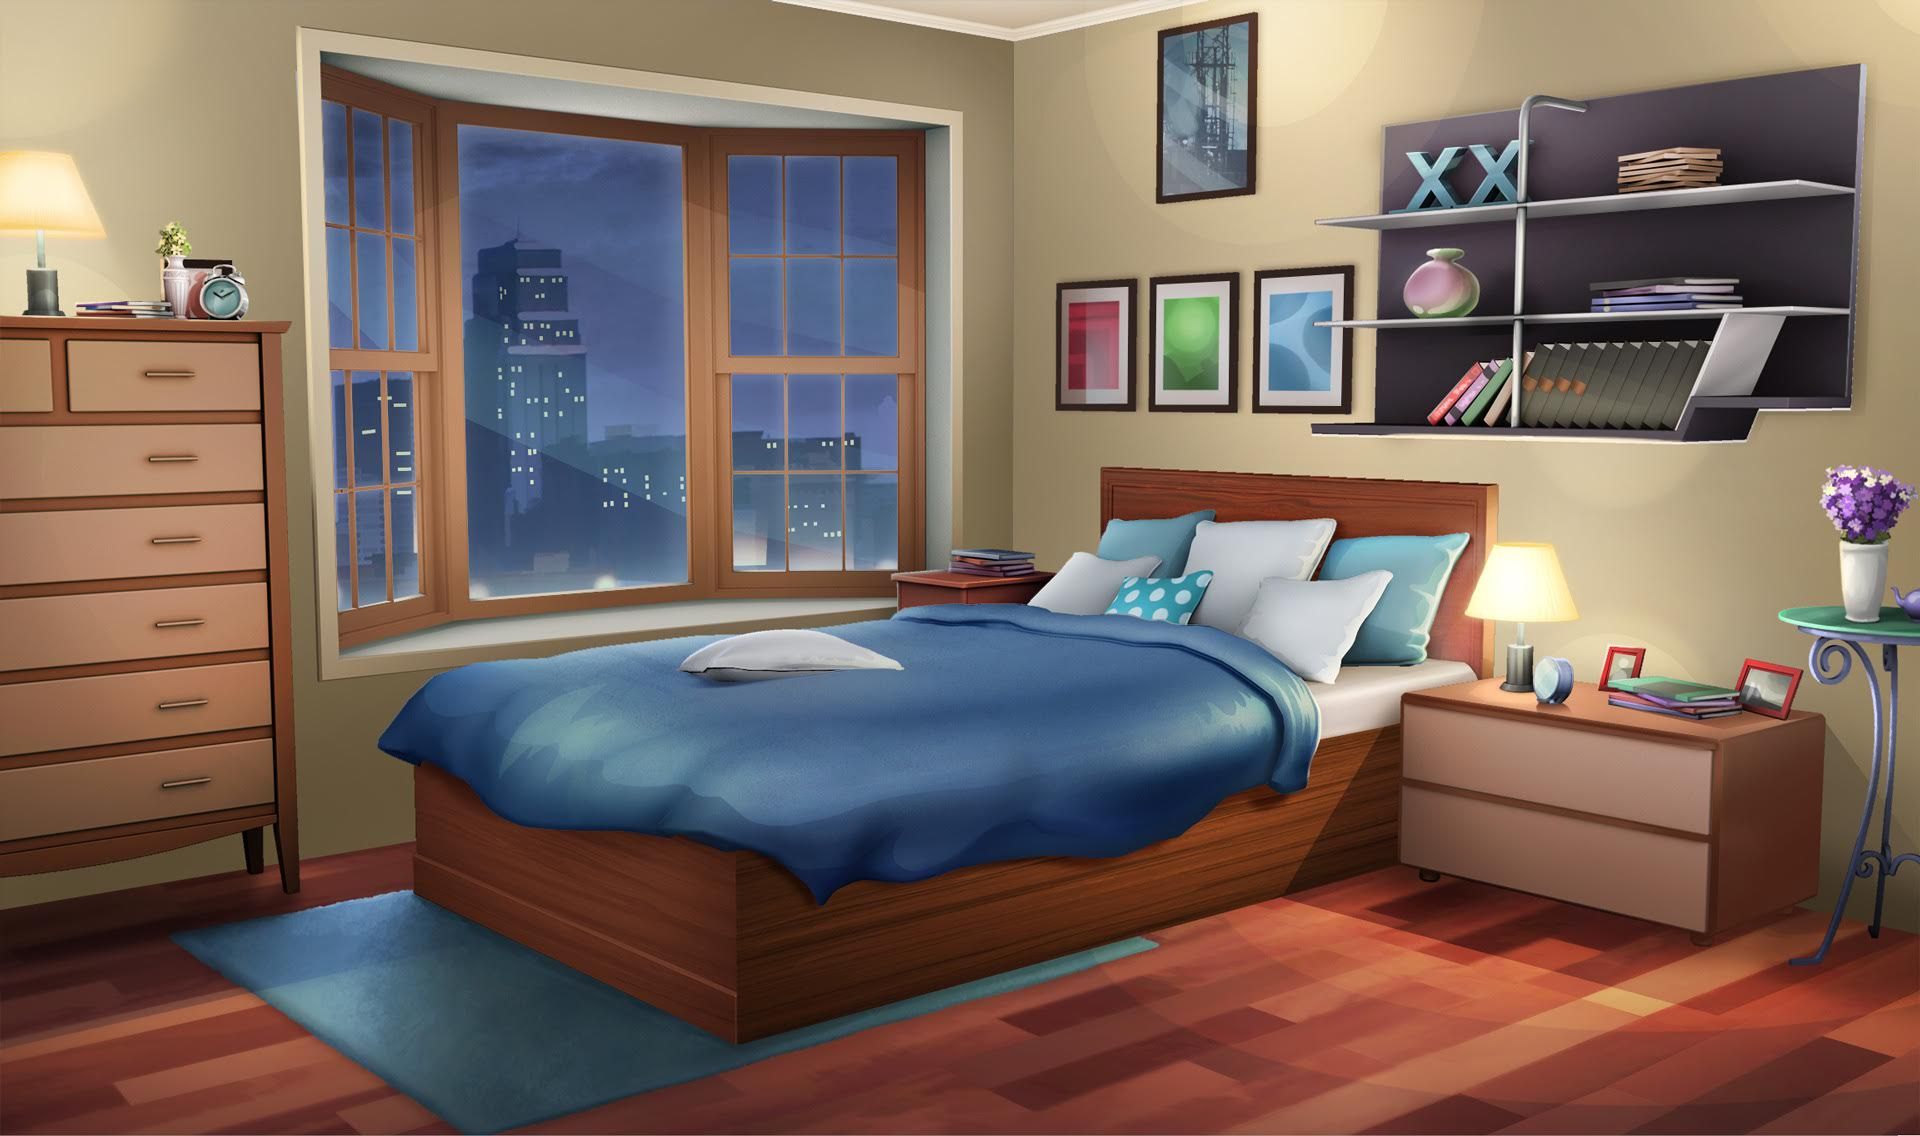 アニメの寝室の壁紙,寝室,家具,ベッド,ルーム,ベッドシーツ